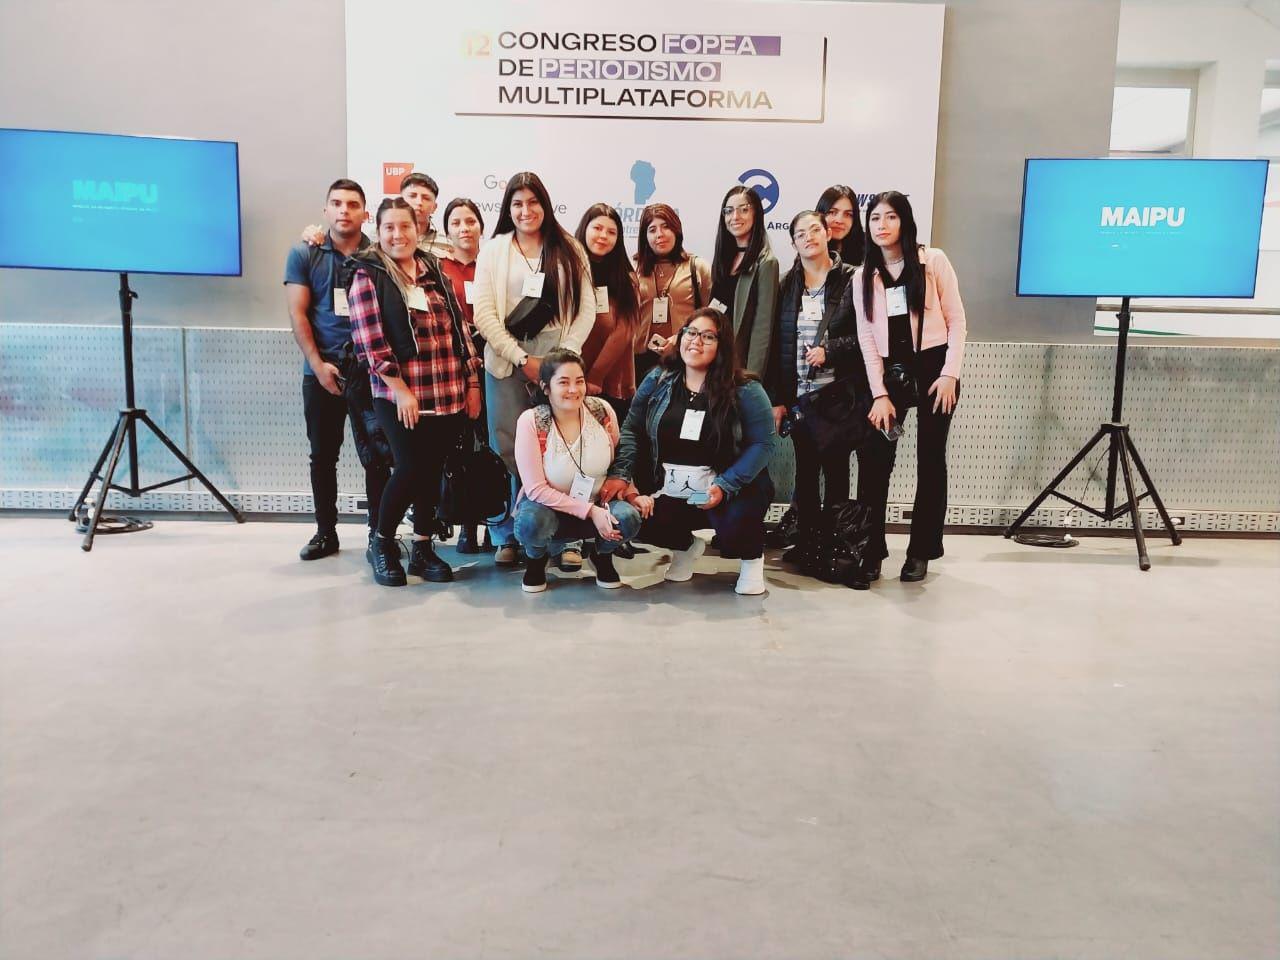 IFD Campo Gallo presente en el Congreso FOPEA de Periodismo Multiplataforma